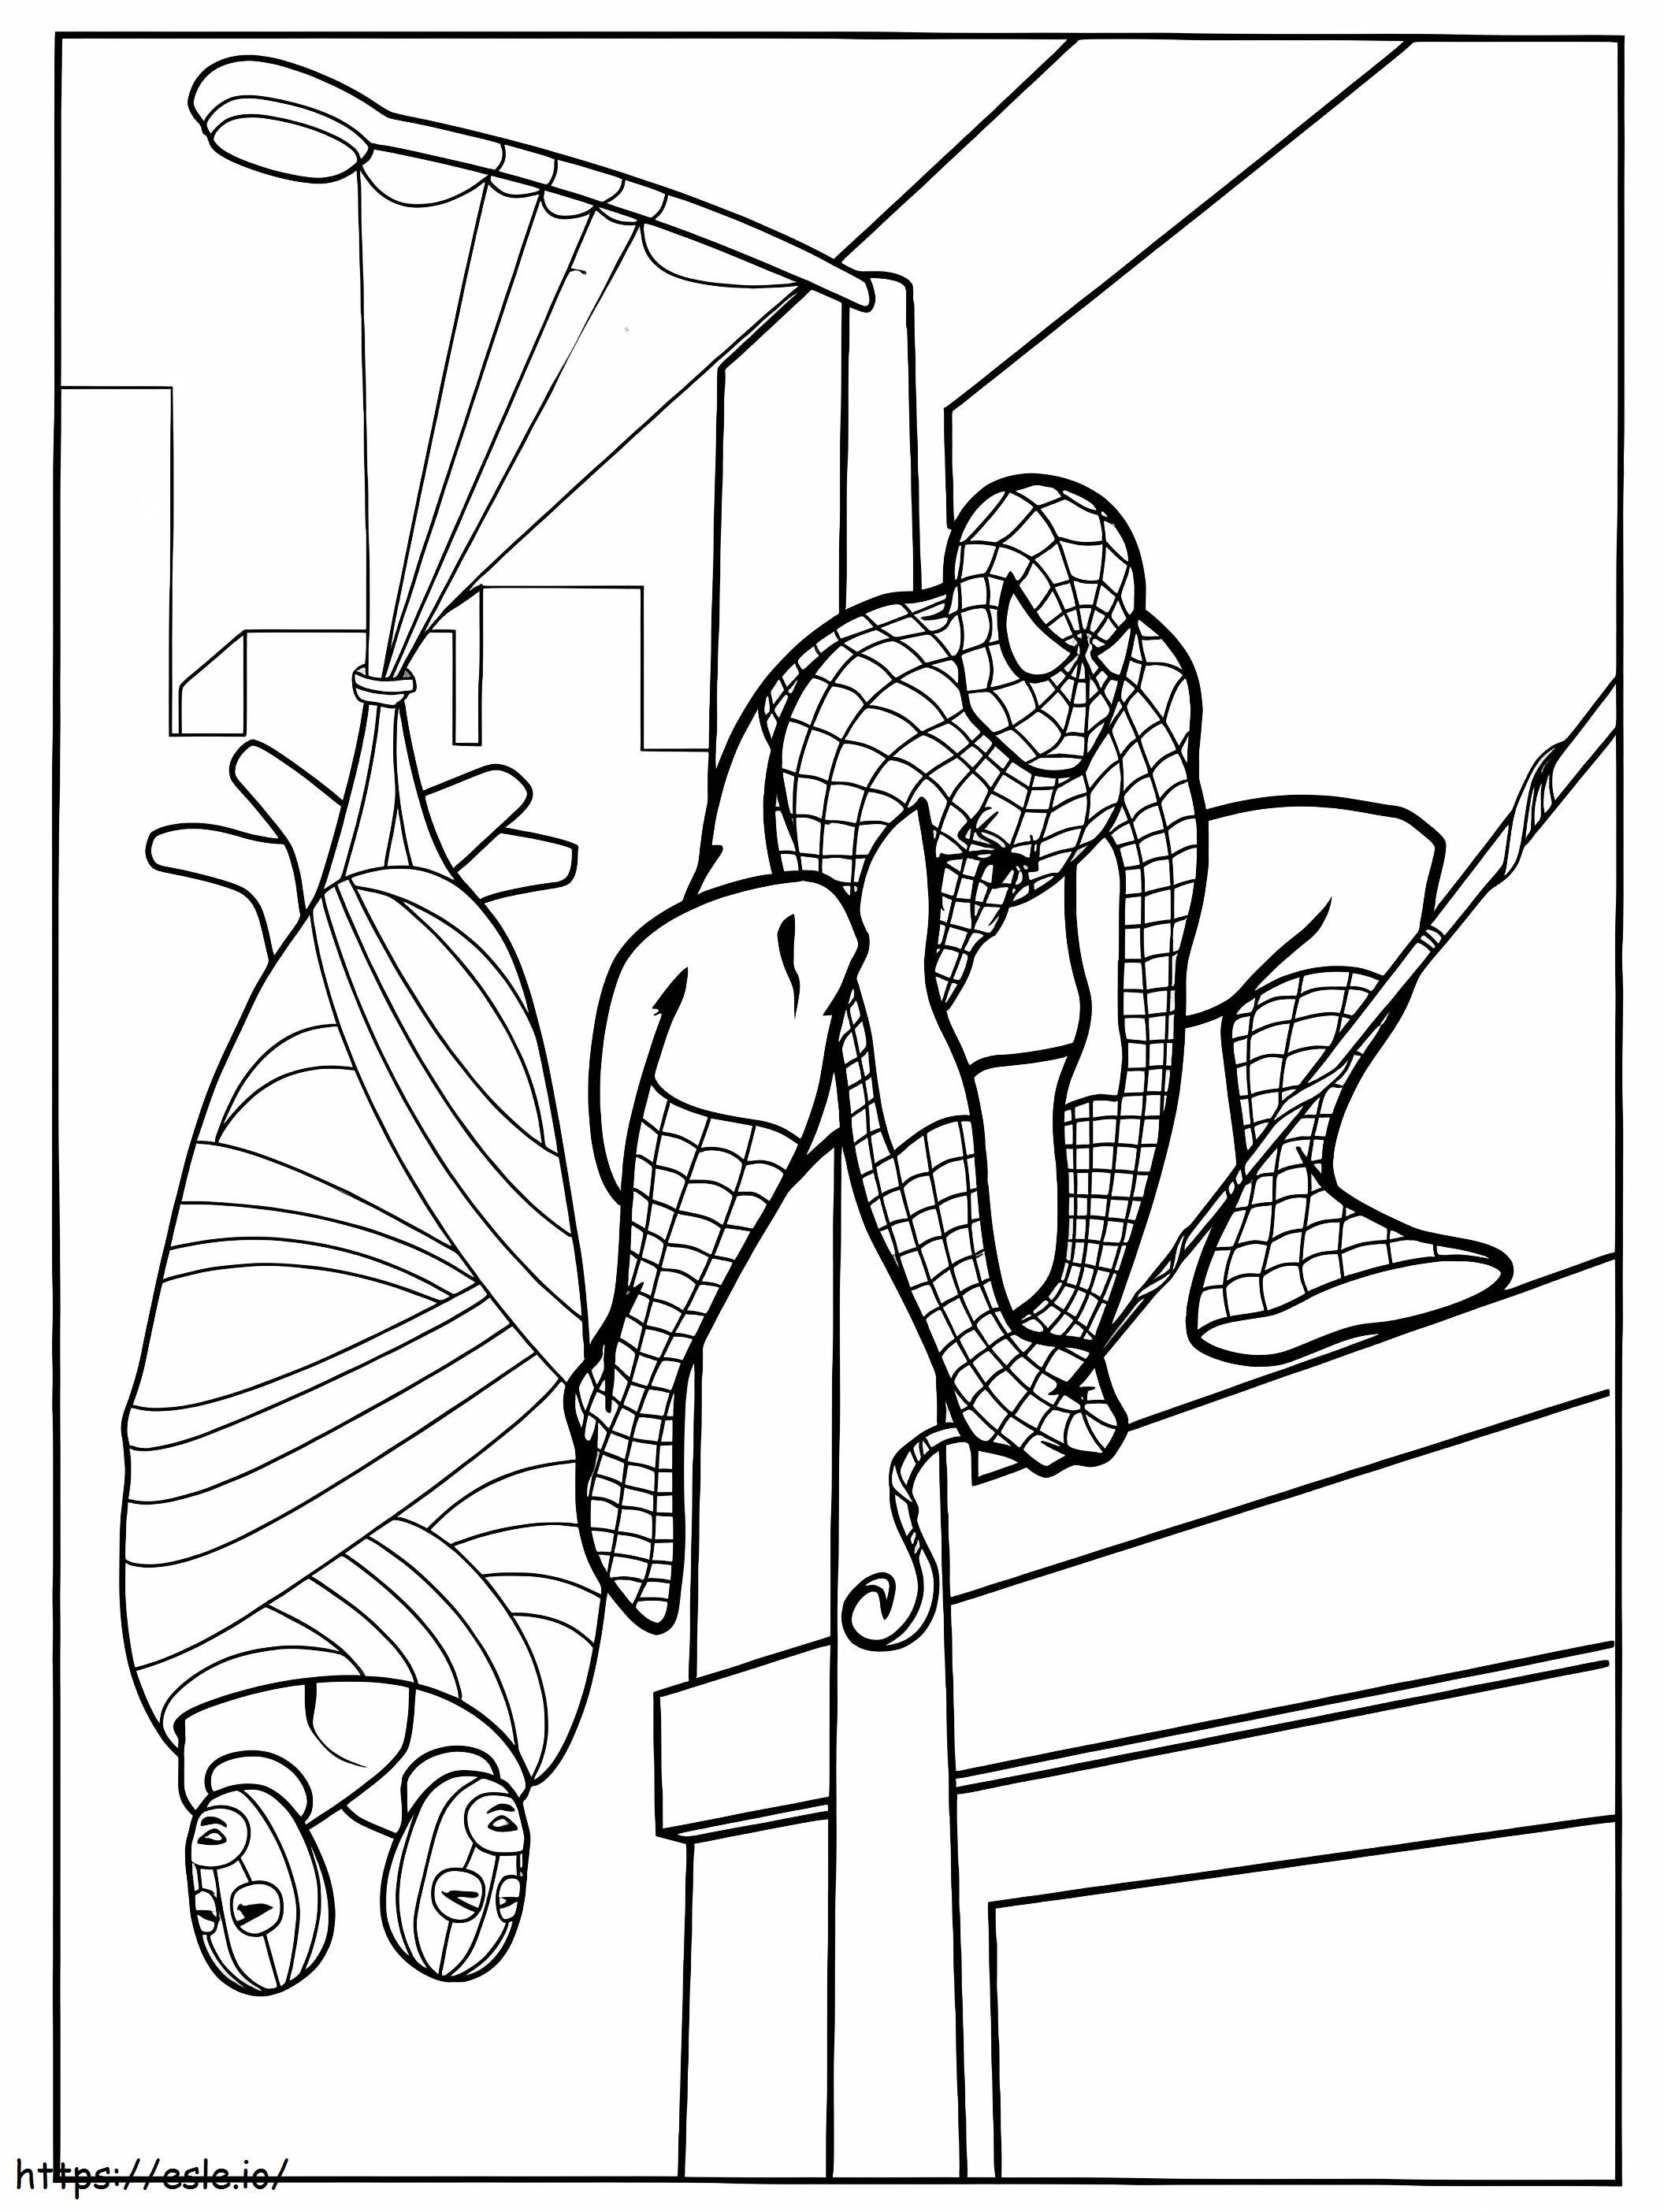 Spiderman cattura ladro da colorare